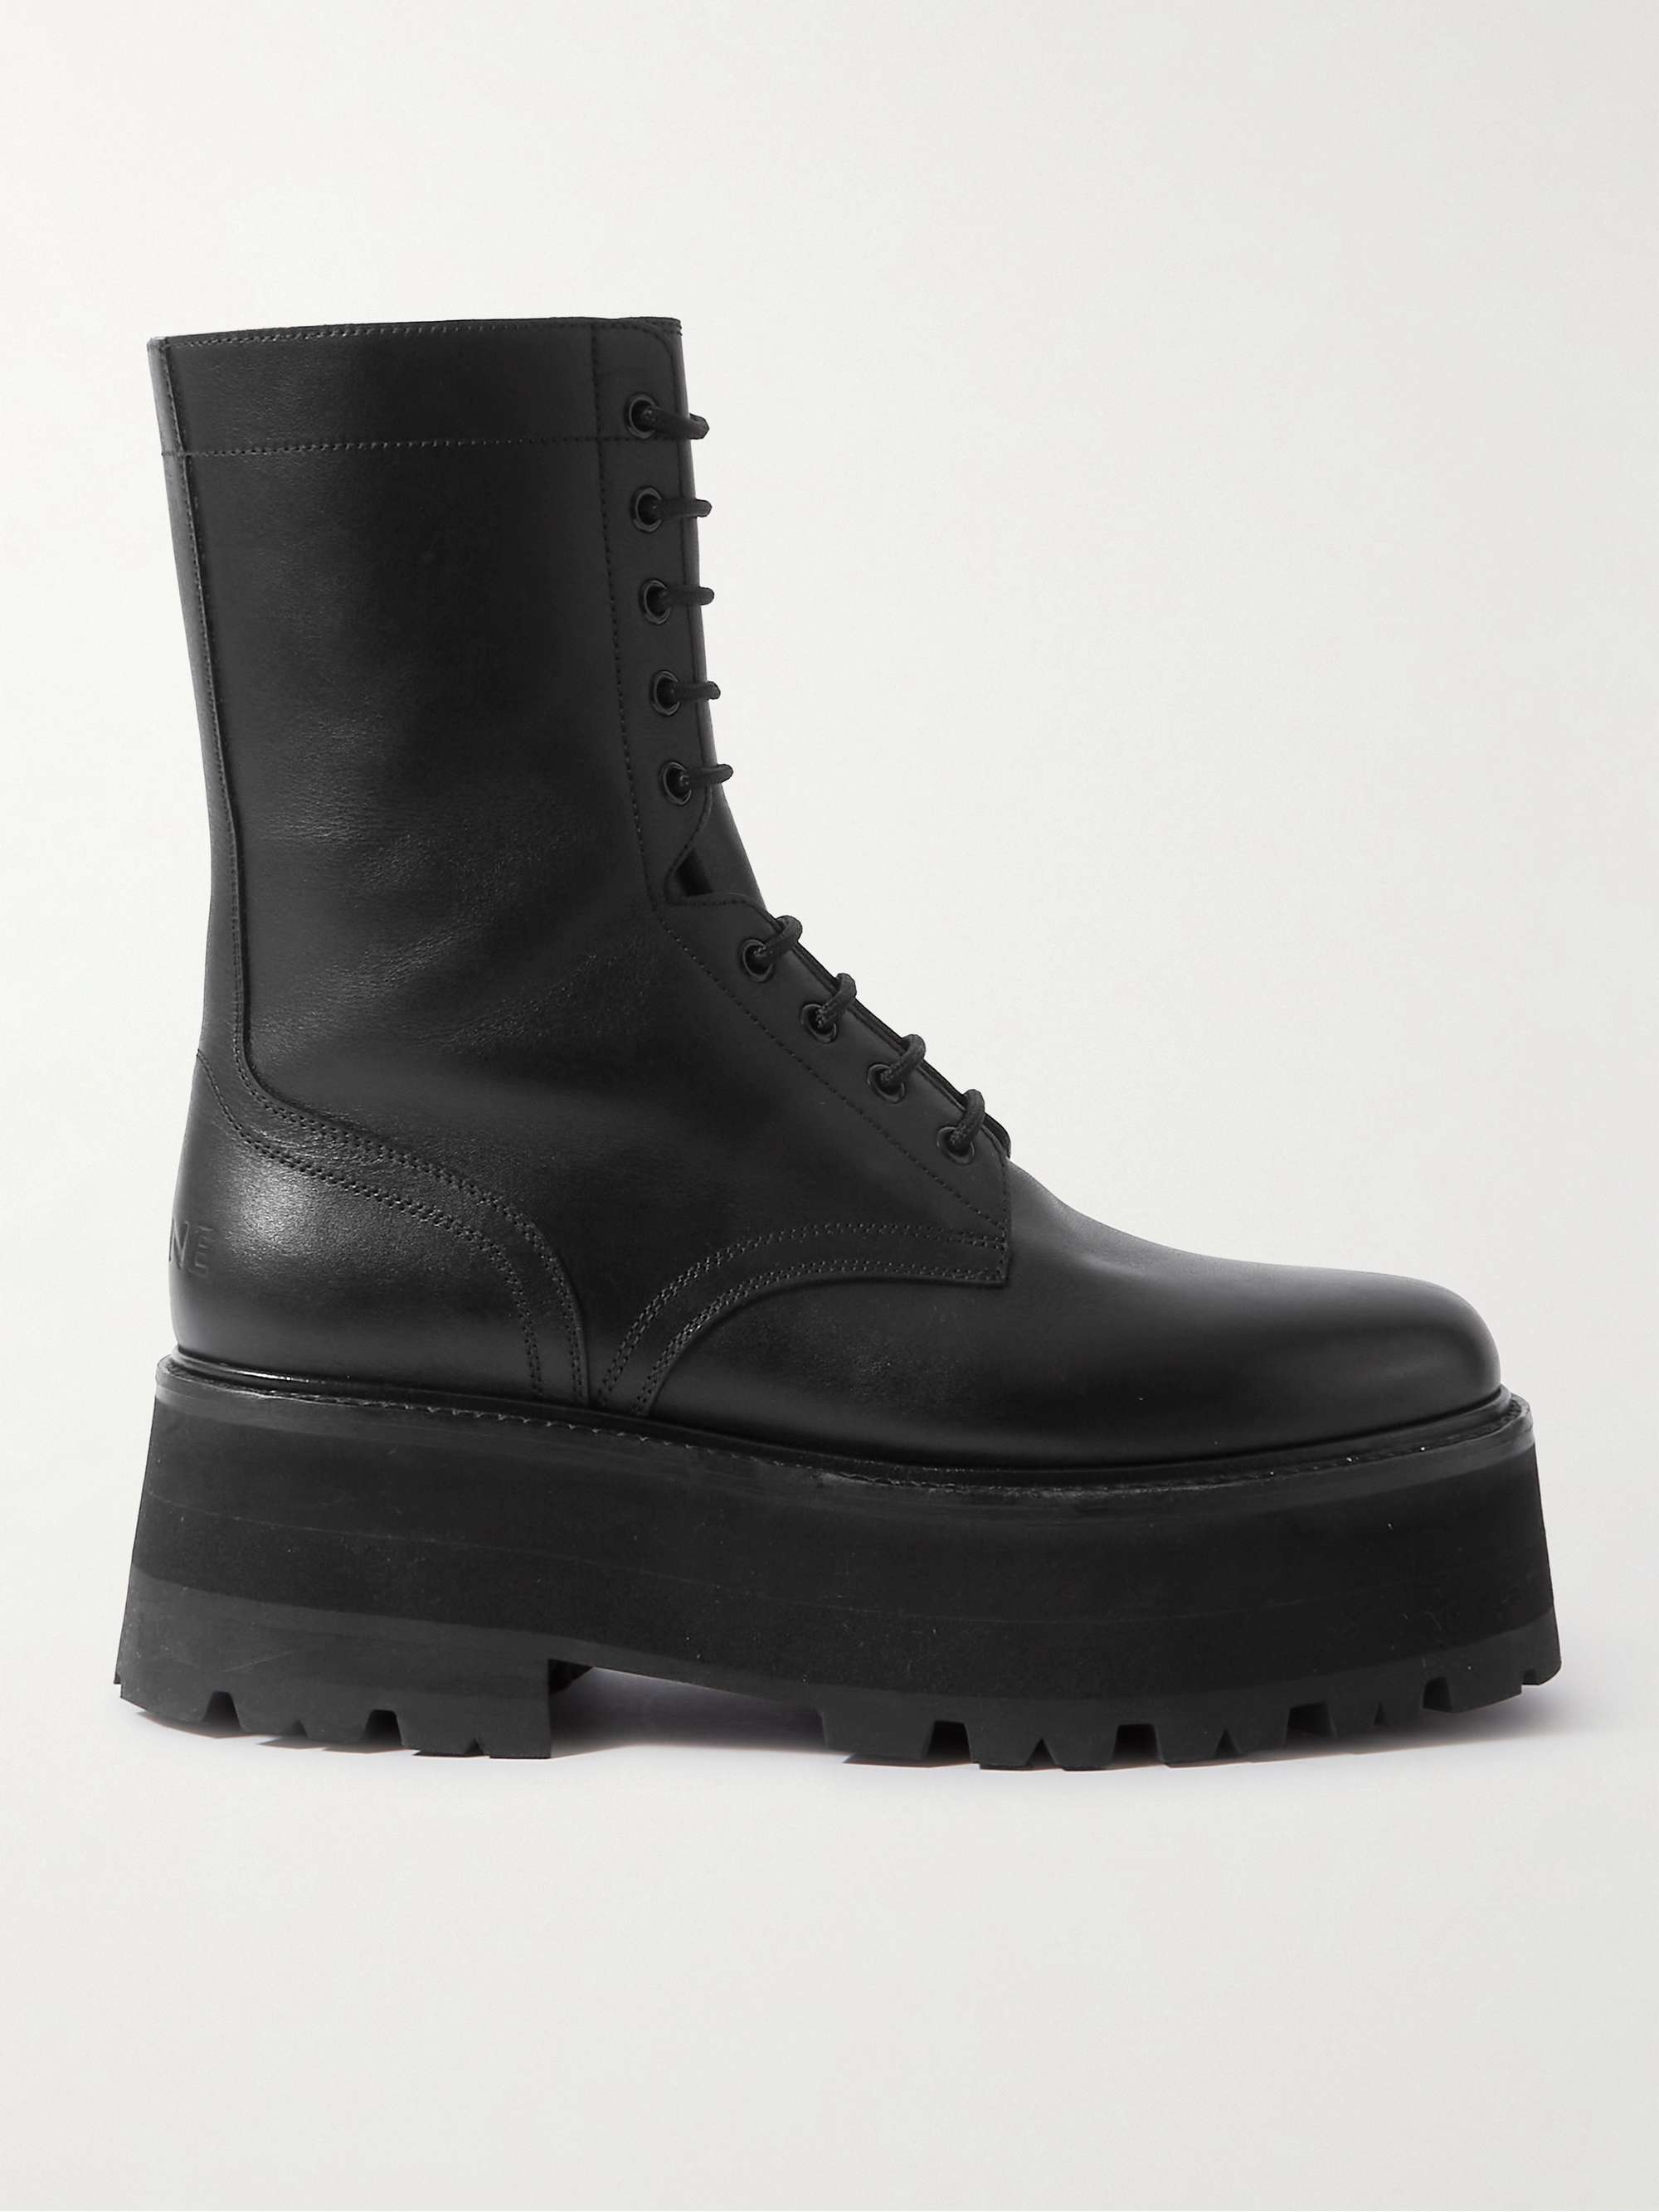 CELINE HOMME Leather Platform Boots | MR PORTER